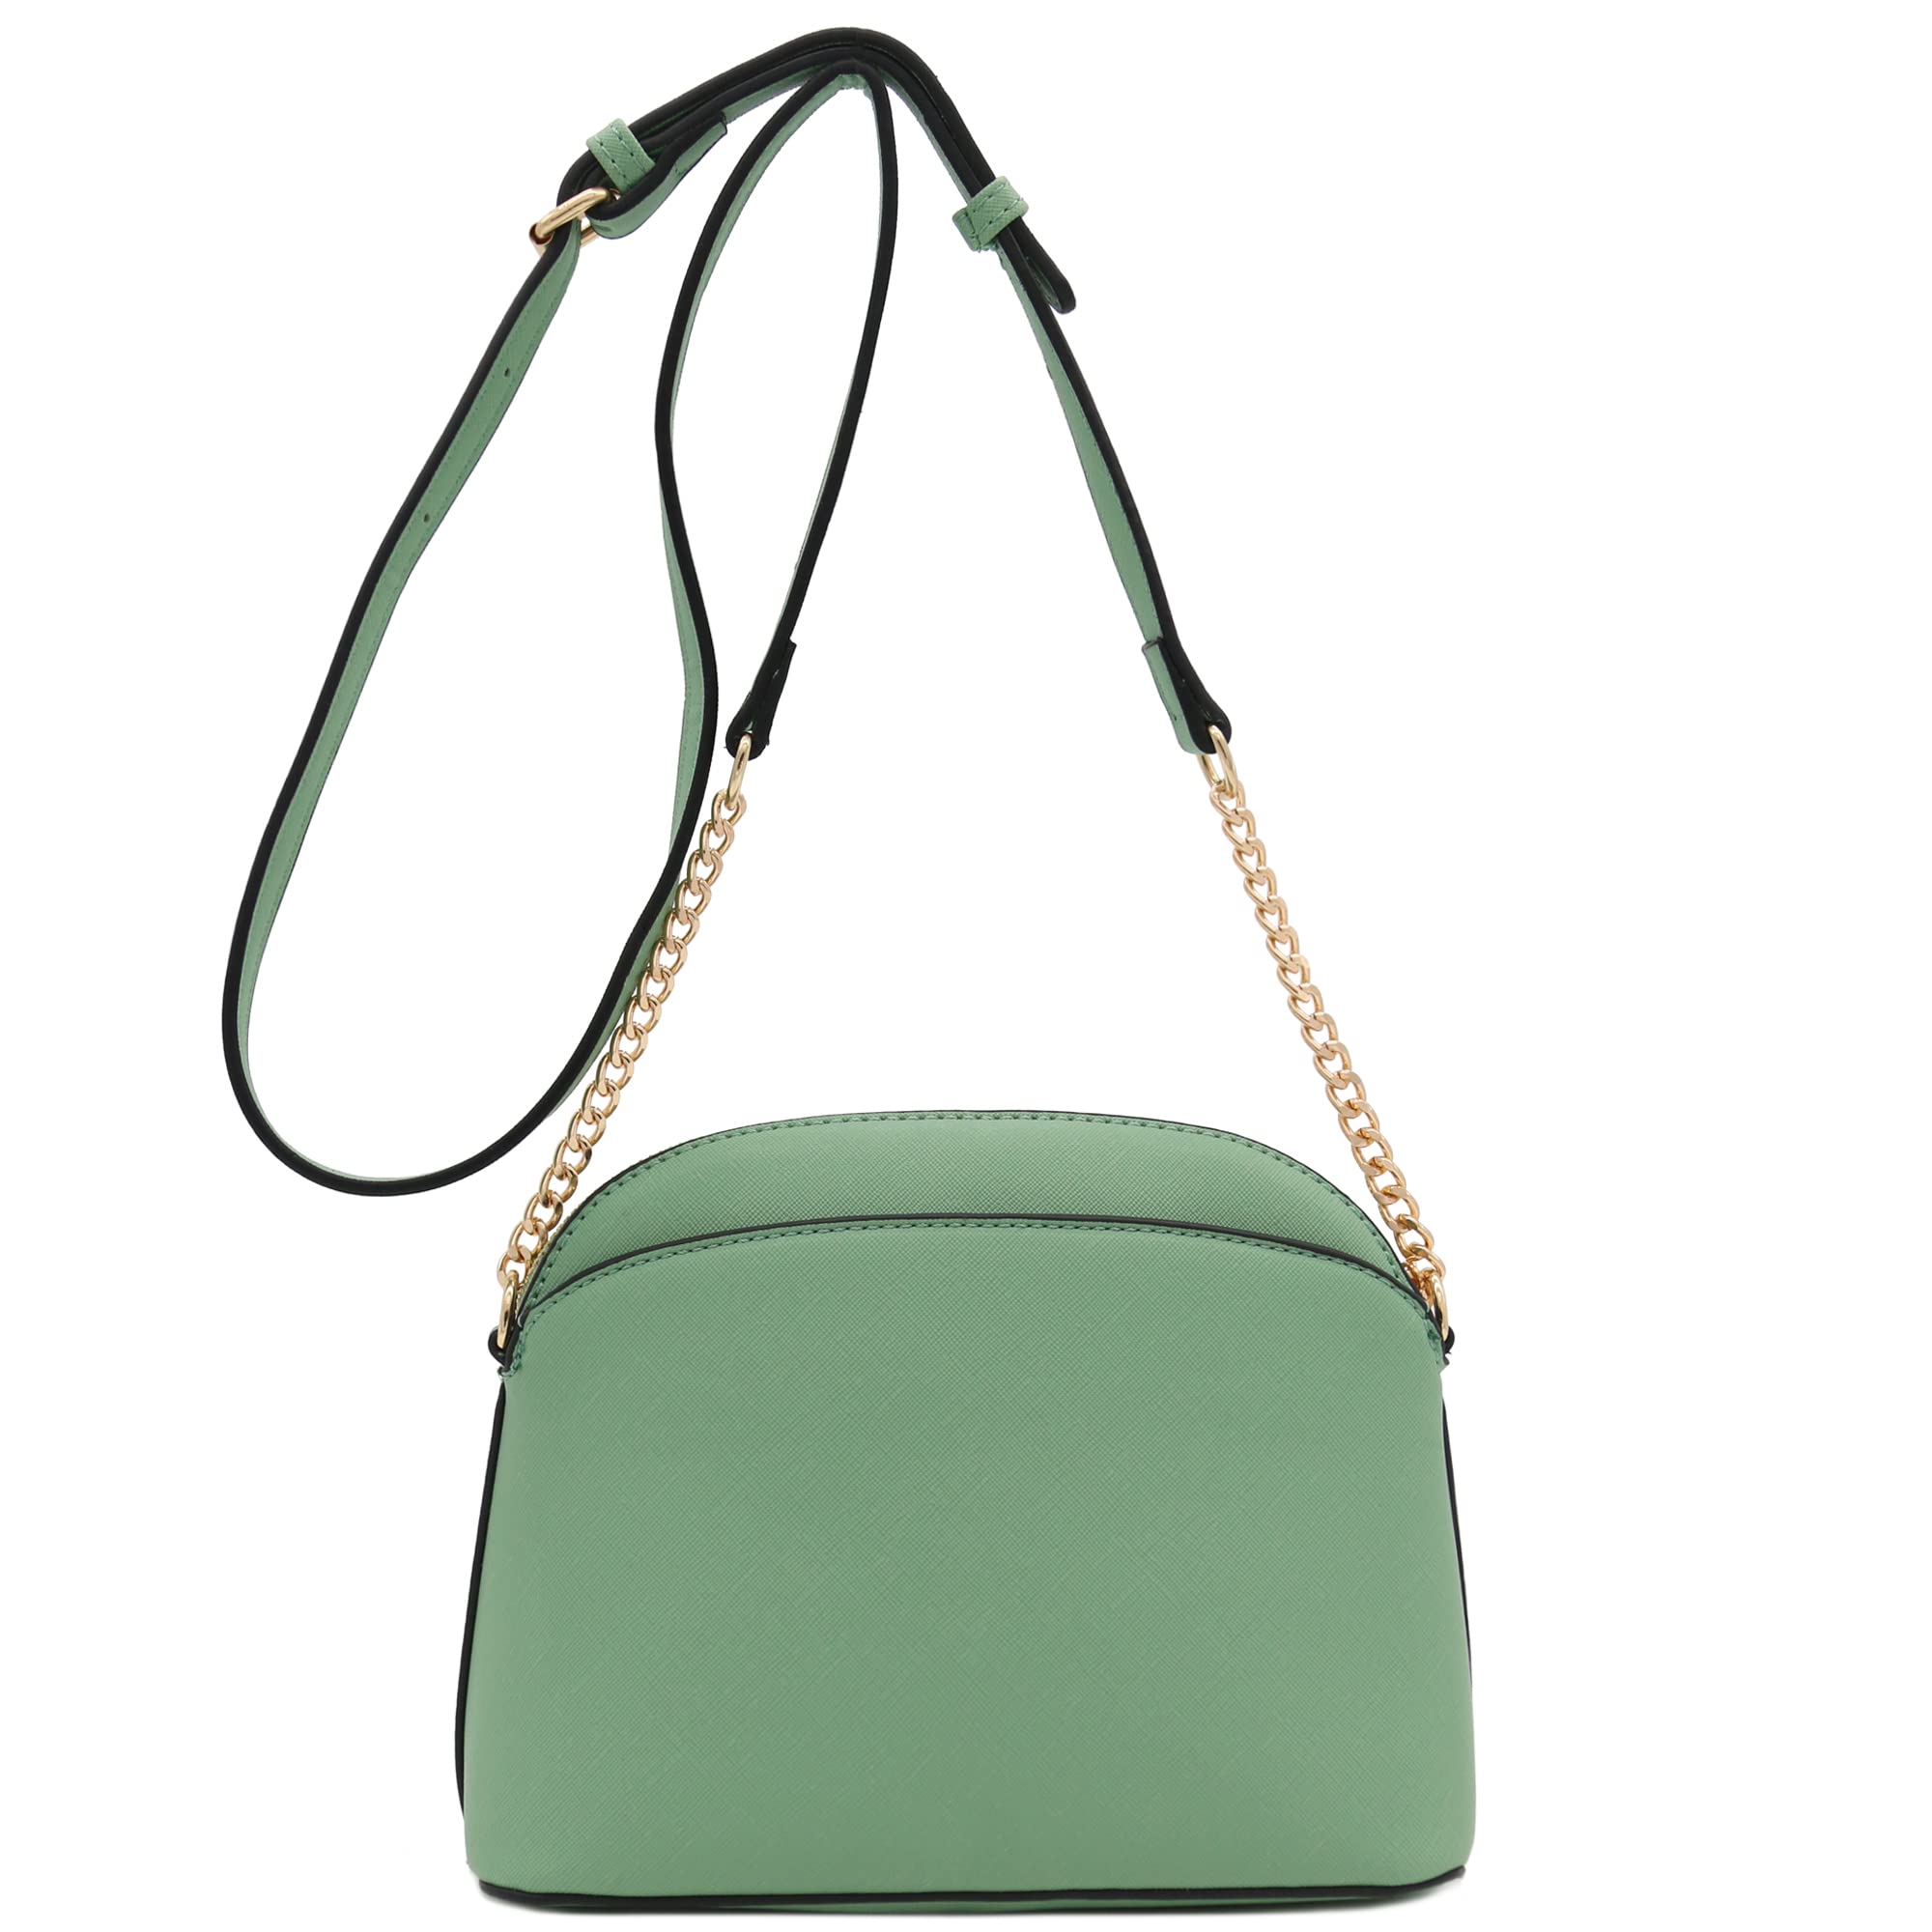 FashionPuzzle Saffiano Small Dome Crossbody bag with Chain Strap